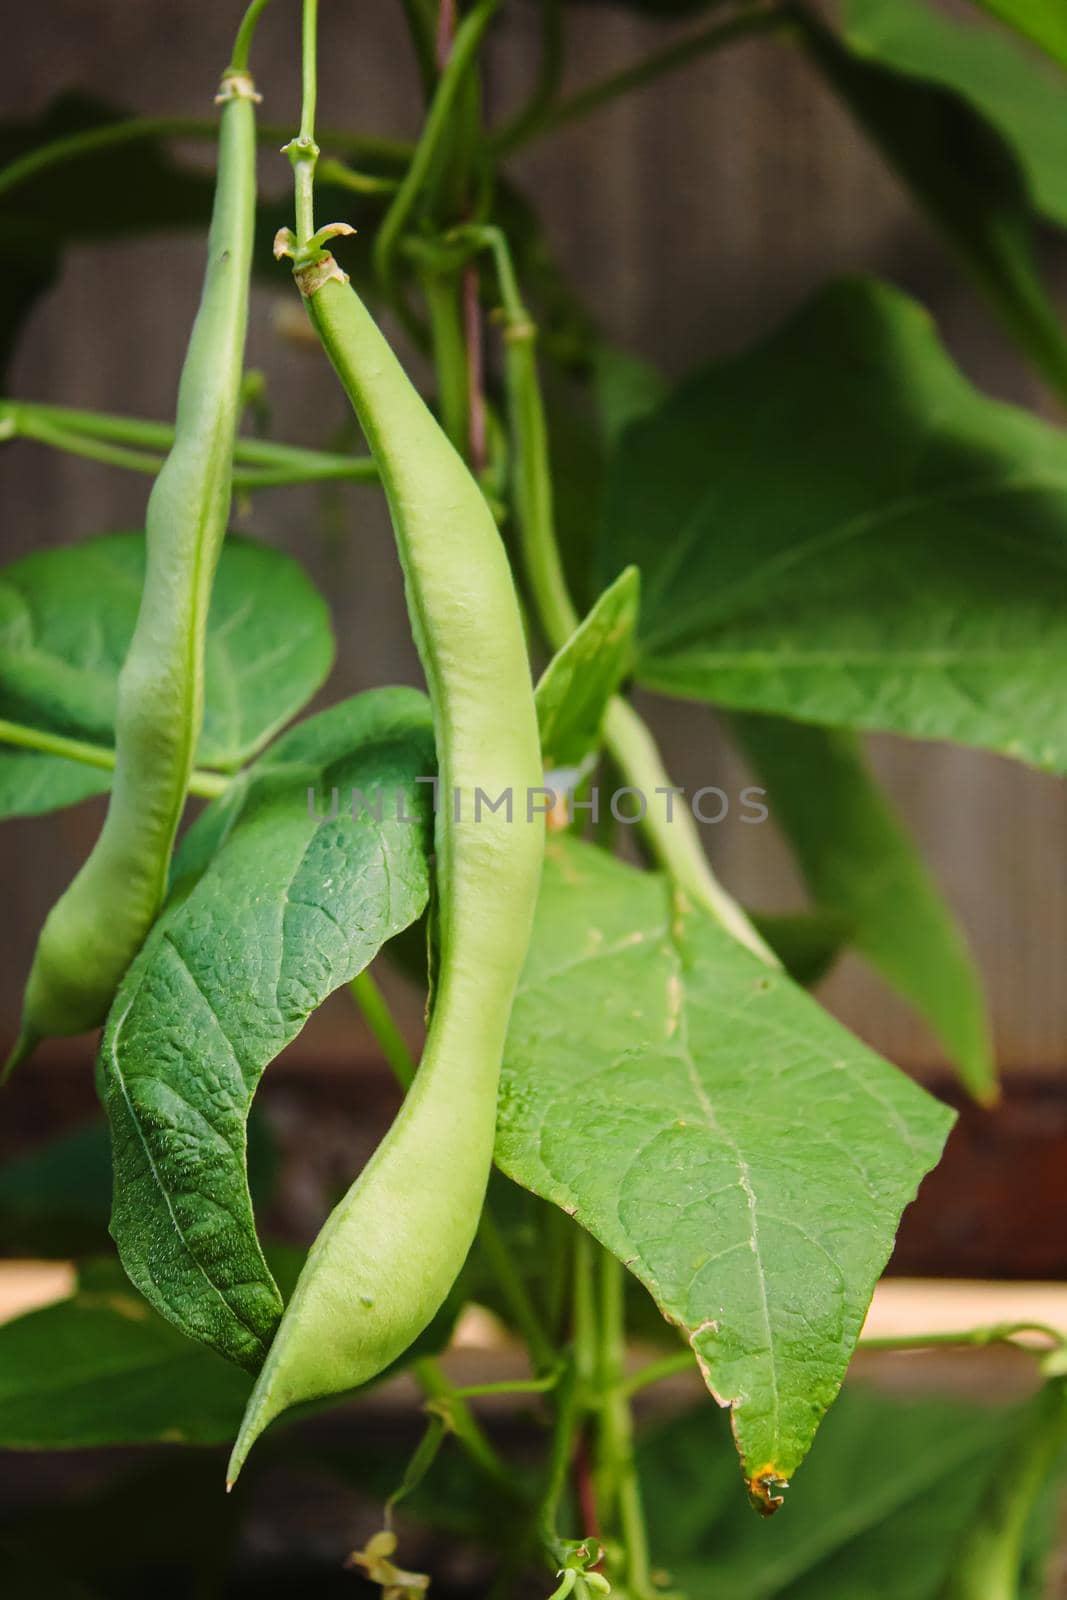 selenium bean pods in garden. selective focus.food